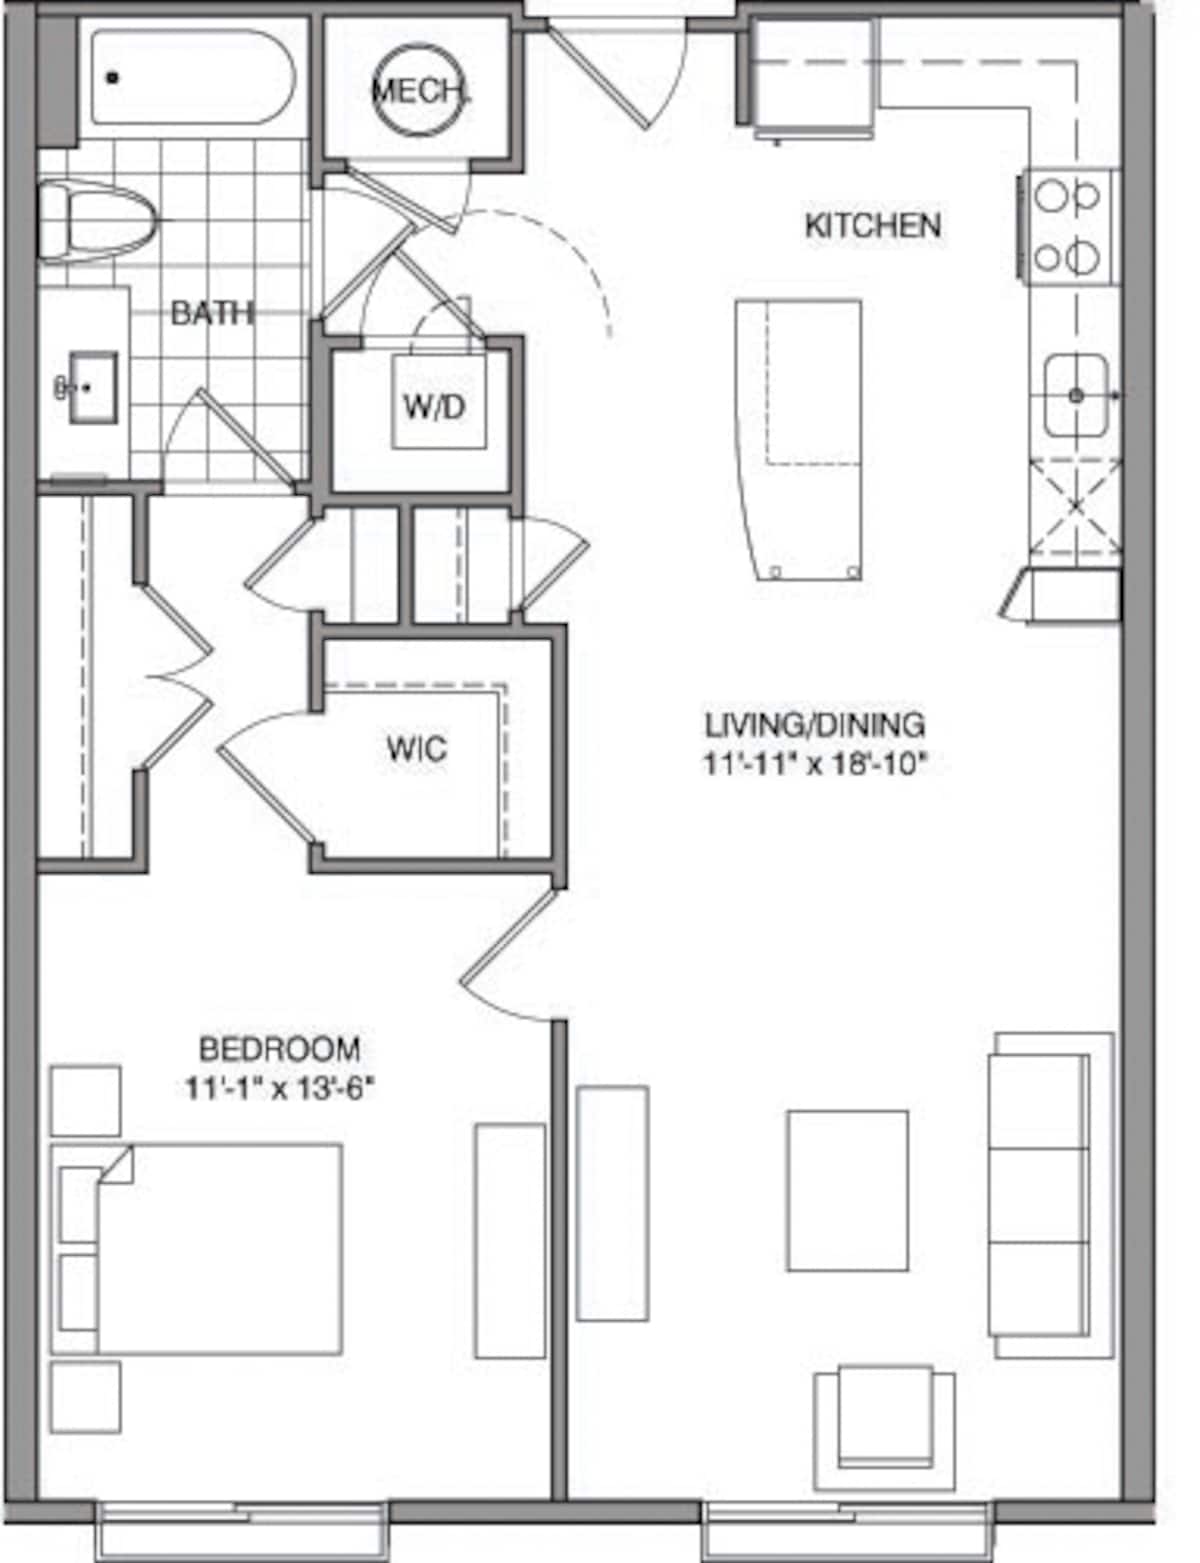 Floorplan diagram for 1 Bdrm I, showing 1 bedroom